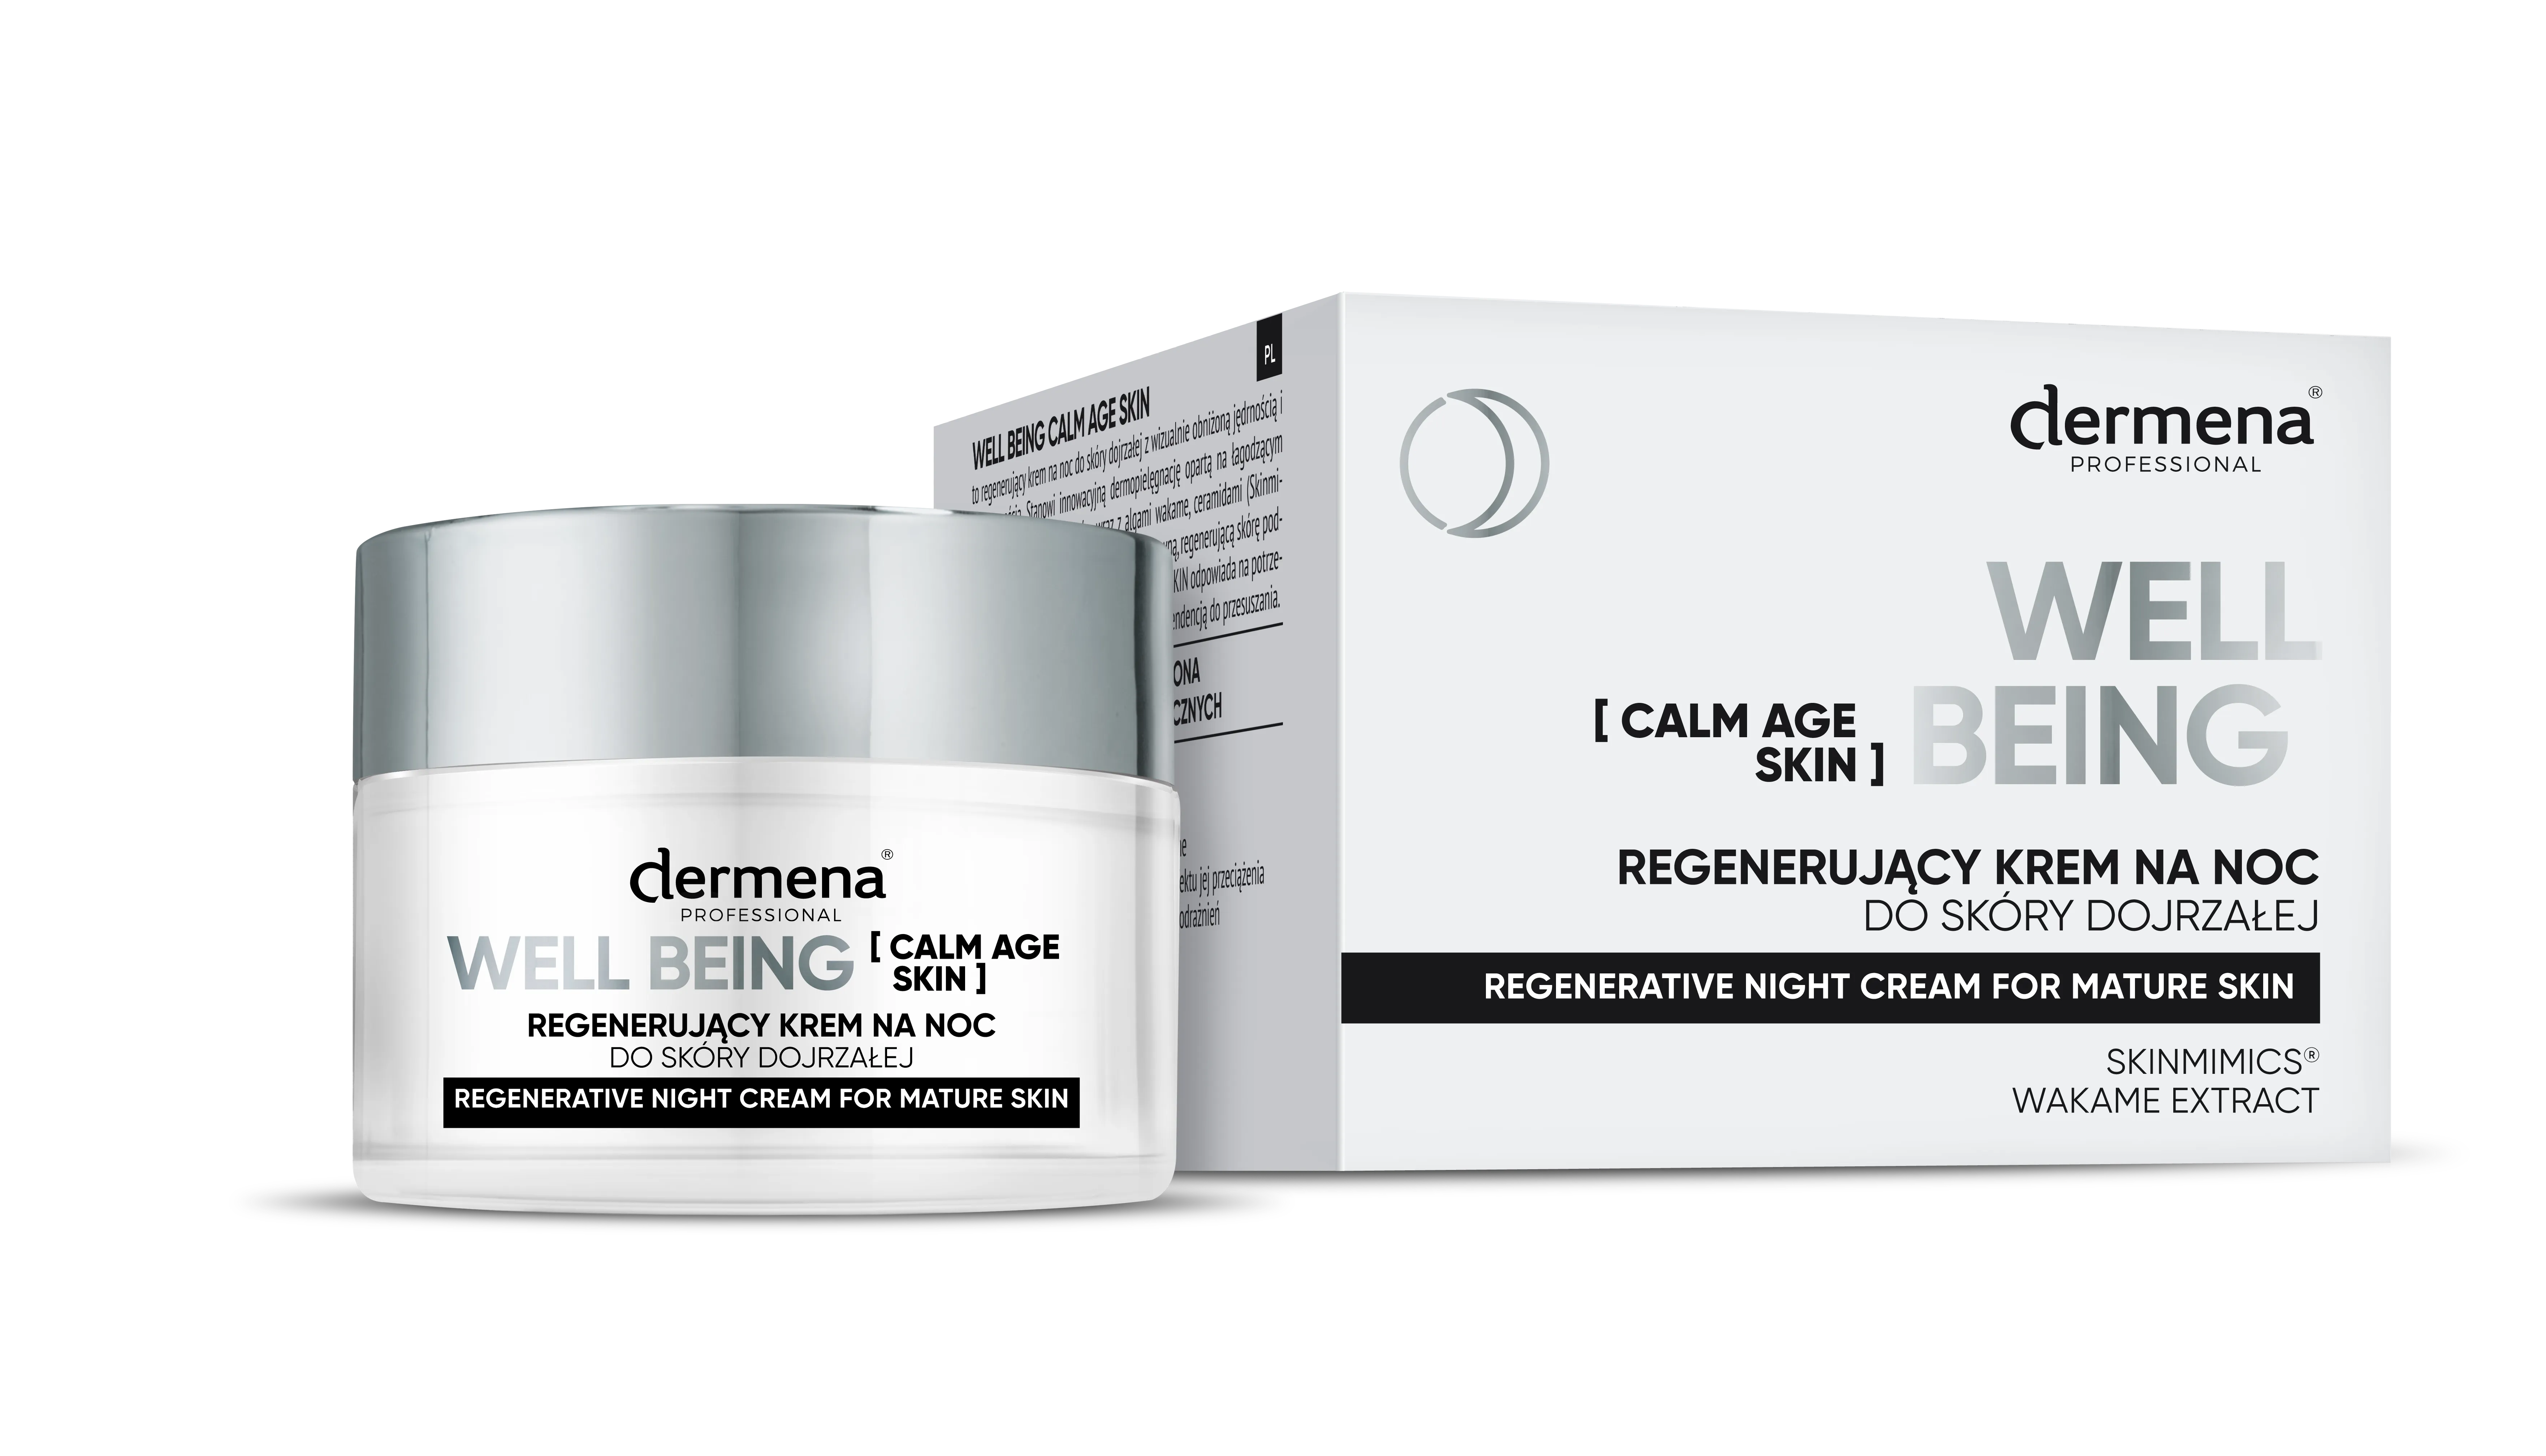 Dermena Professional Well Being Calm Age Skin regenerujący krem na noc do skóry dojrzałej, 50 ml